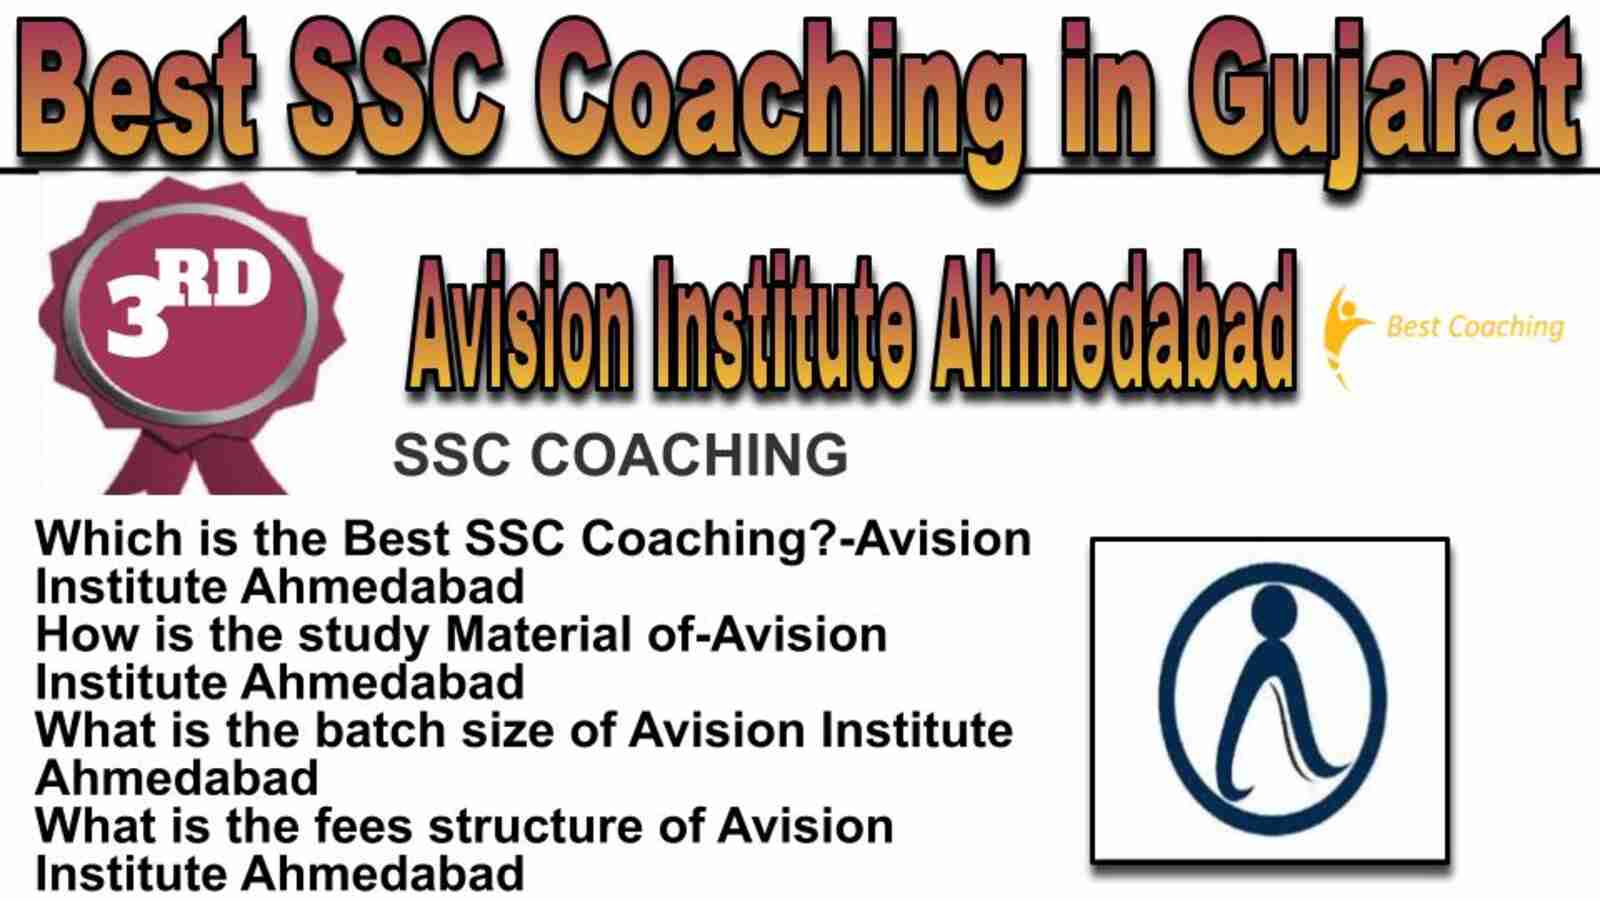 Rank 3 best SSC coaching in Gujarat